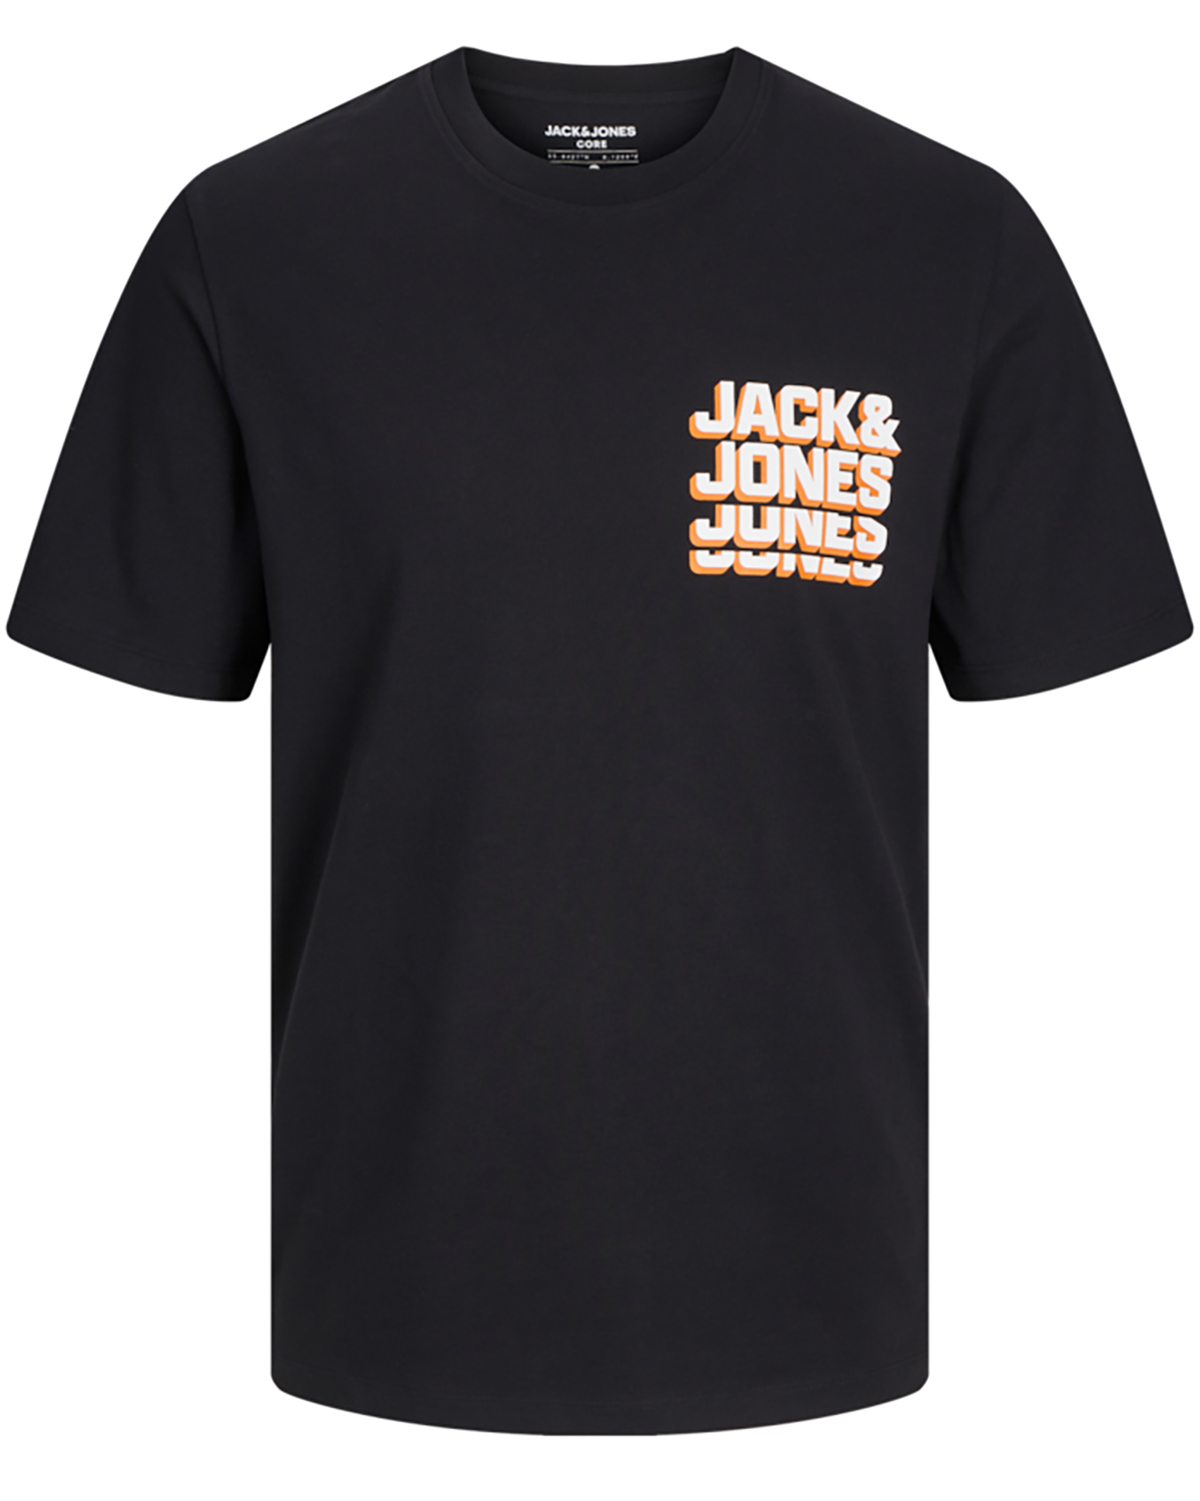 Se Jack & Jones t-shirt s/s, Script tee, sort - 194 - XL+ - XL hos Umame.dk